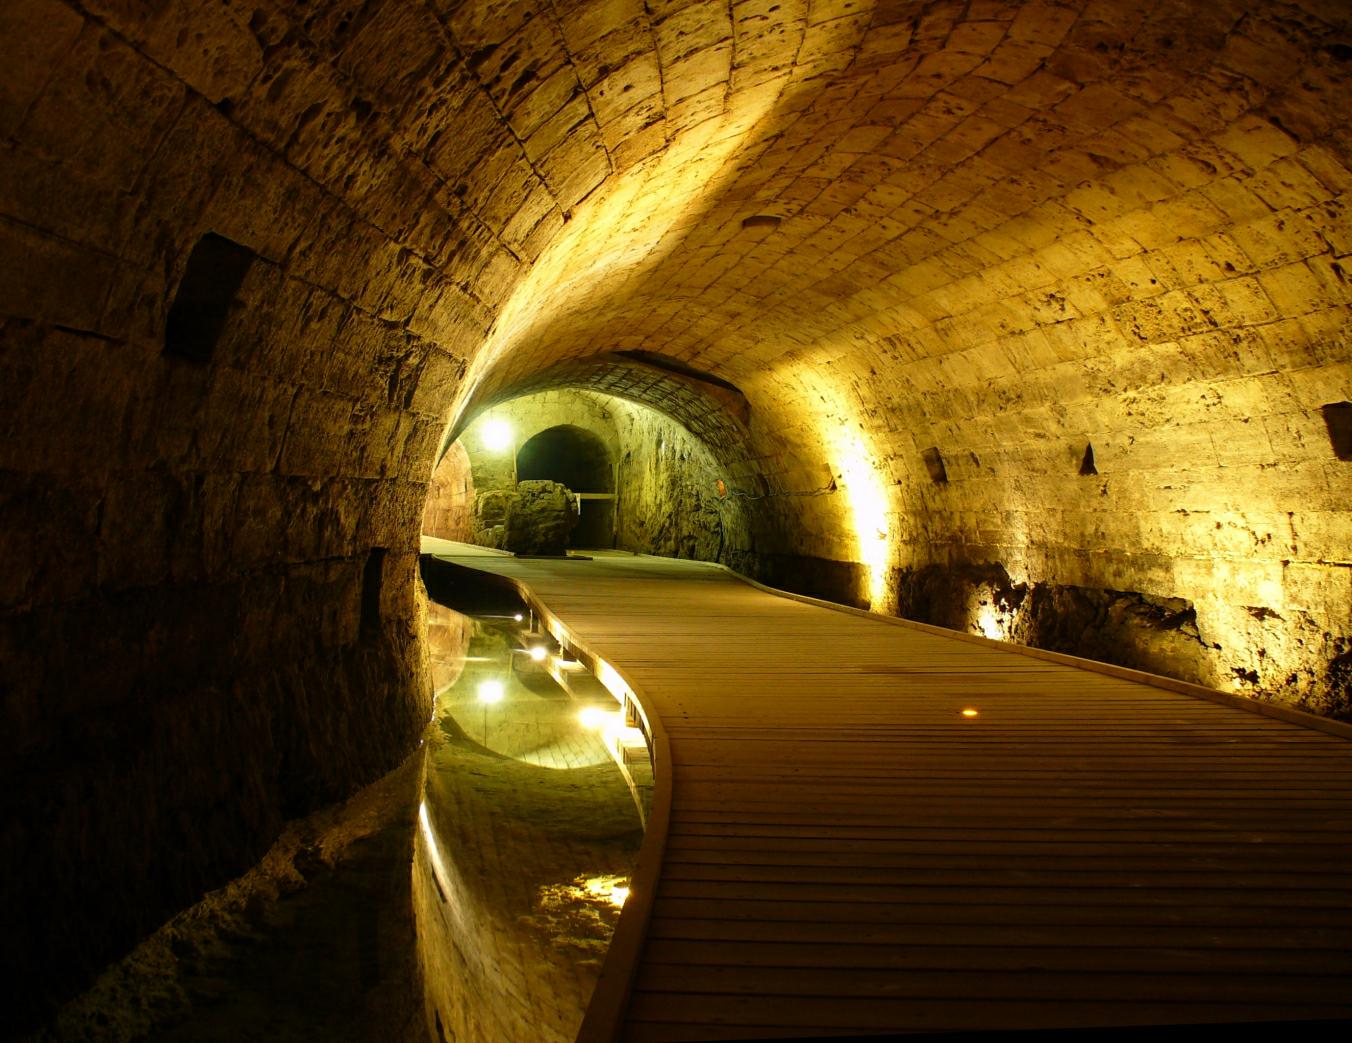 Terowongan kuno yang dibangun oleh Ksatria Templar yang hilang selama 700 Tahun, ditemukan secara tidak terduga 2